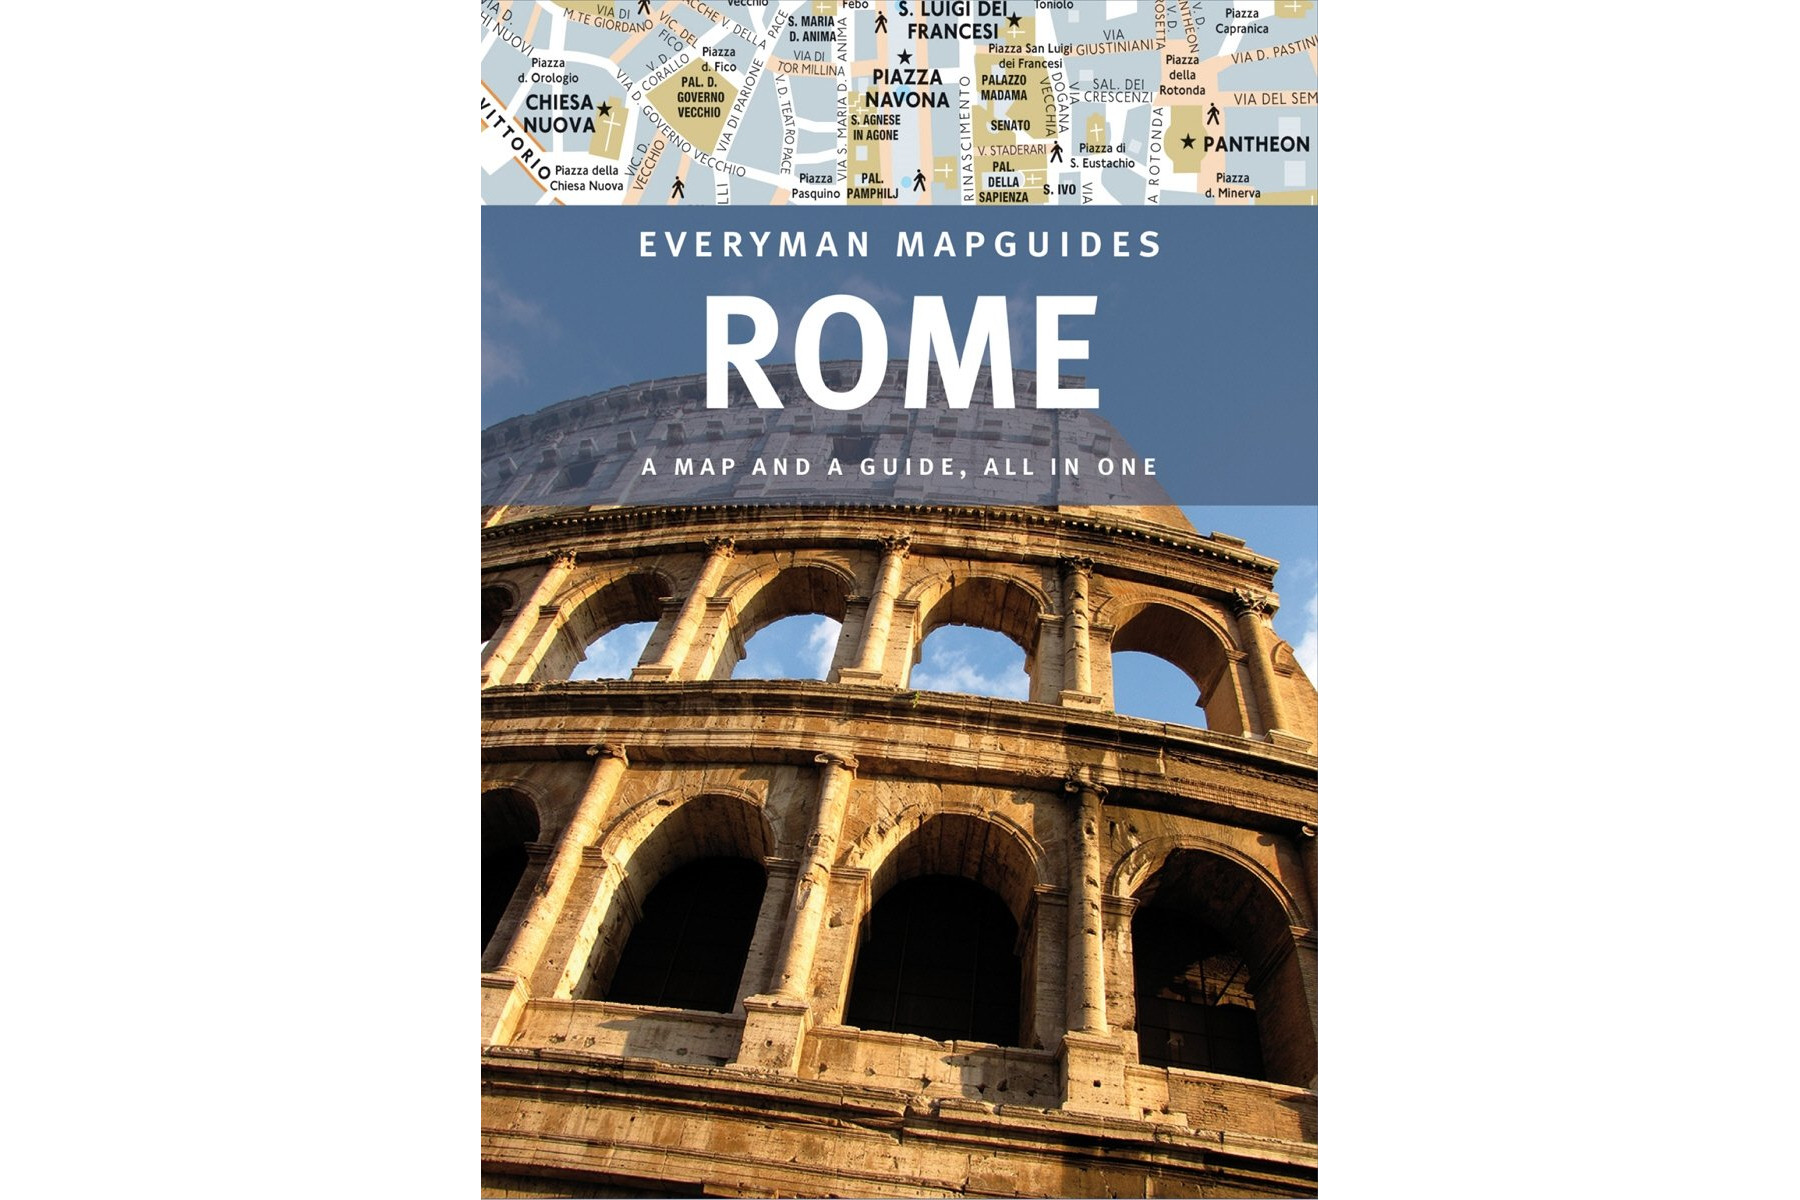 Rome Everyman Mapguide: 2015 edition (Everyman Citymap Guide)